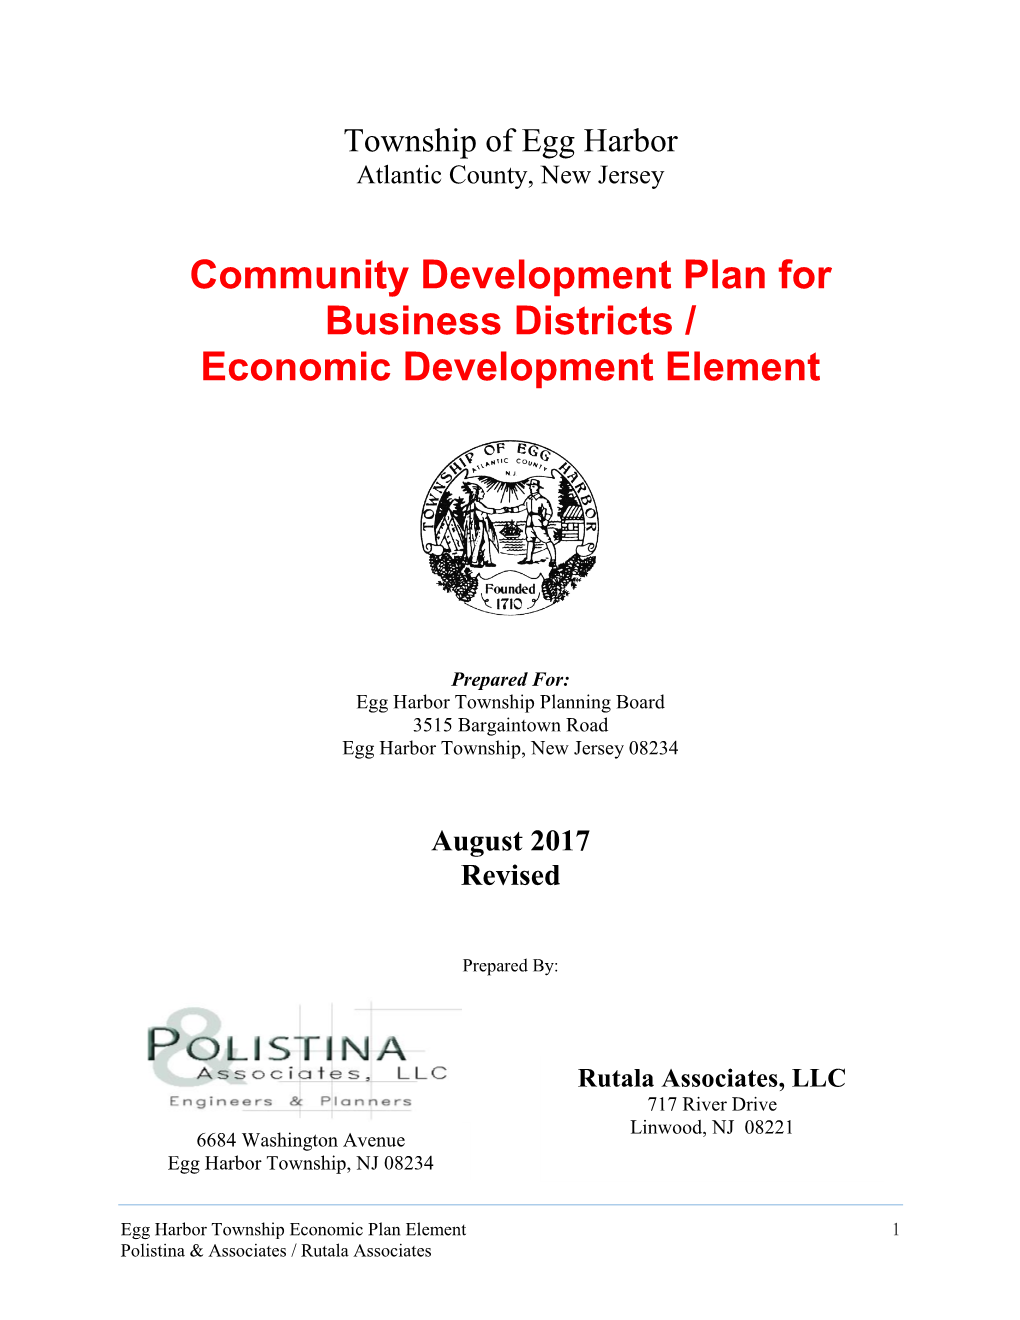 Community Development Plan for Business Districts / Economic Development Element